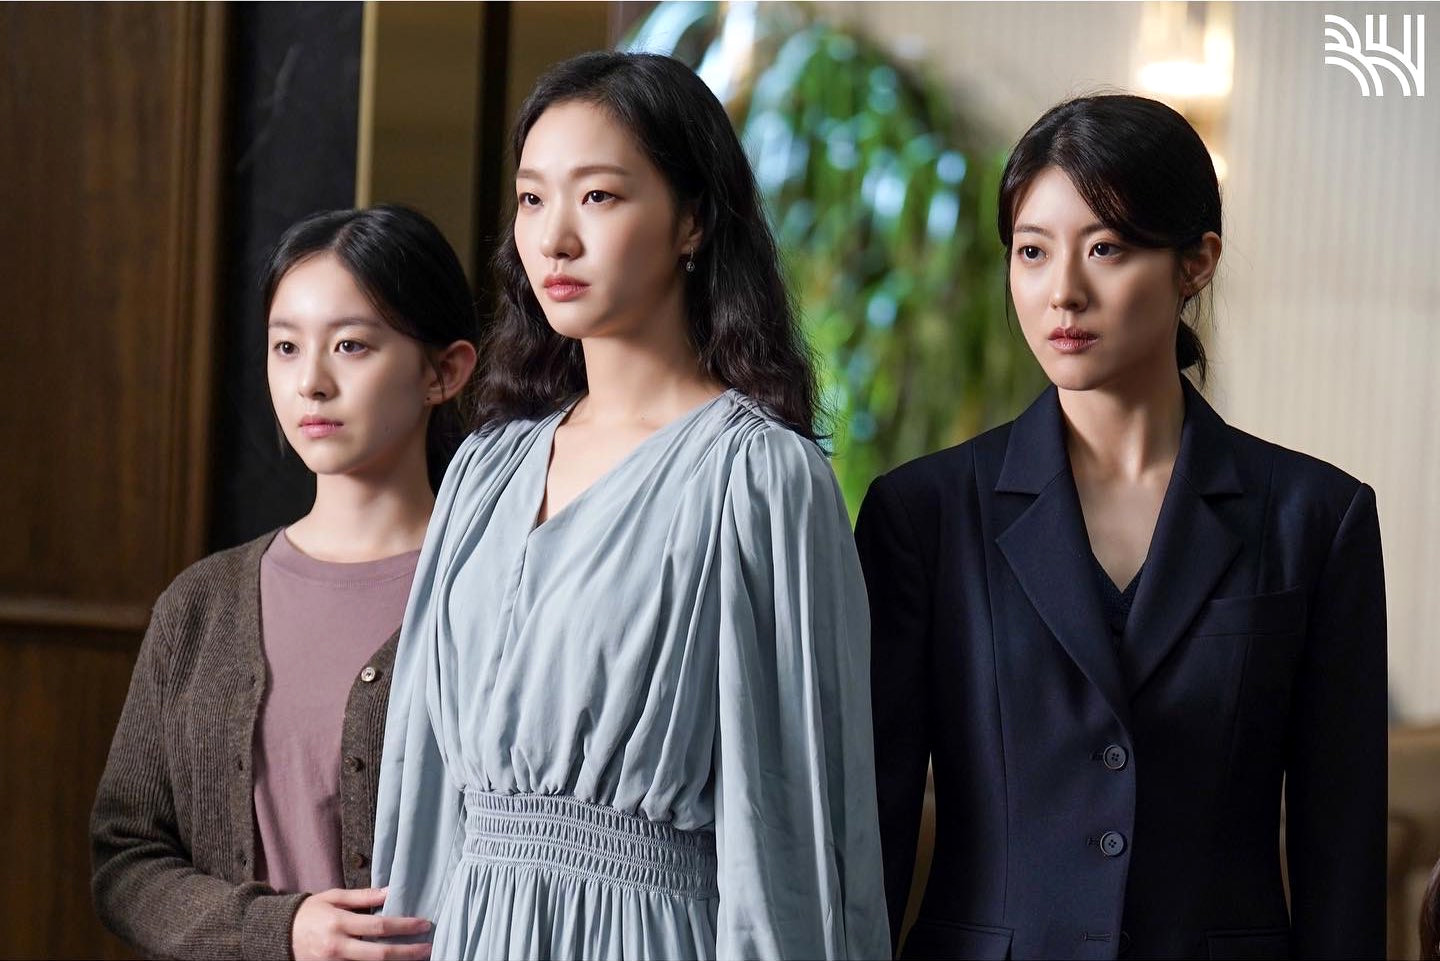 Yêu cầu gỡ phim 'Ba chị em' khỏi Netflix Việt Nam vì xuyên tạc lịch sử